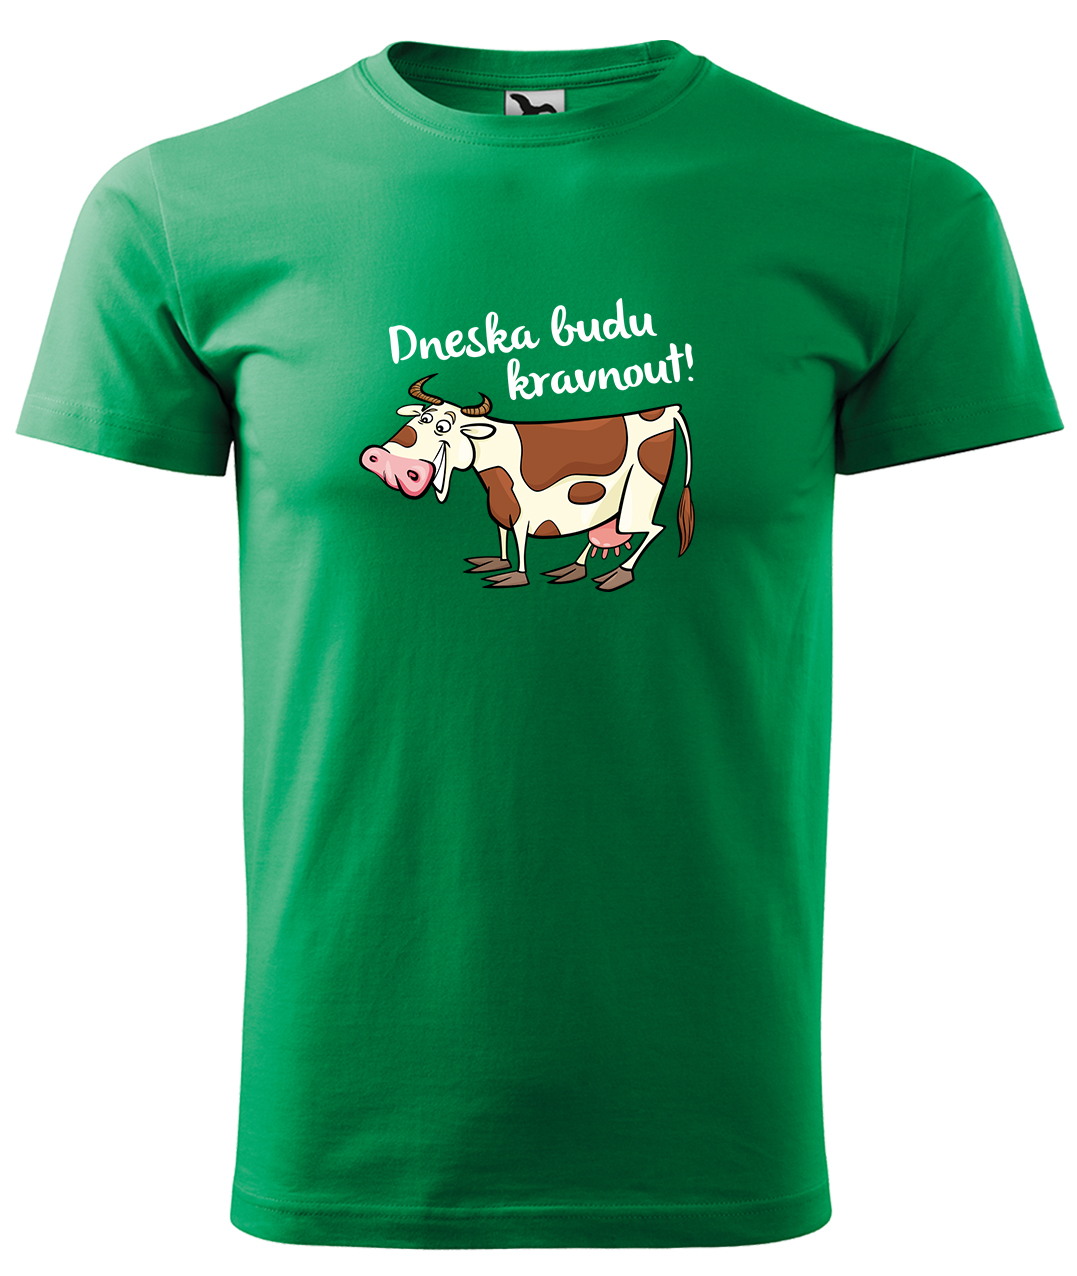 Dětské tričko s krávou - Dneska budu kravnout! Velikost: 4 roky / 110 cm, Barva: Středně zelená (16), Délka rukávu: Krátký rukáv